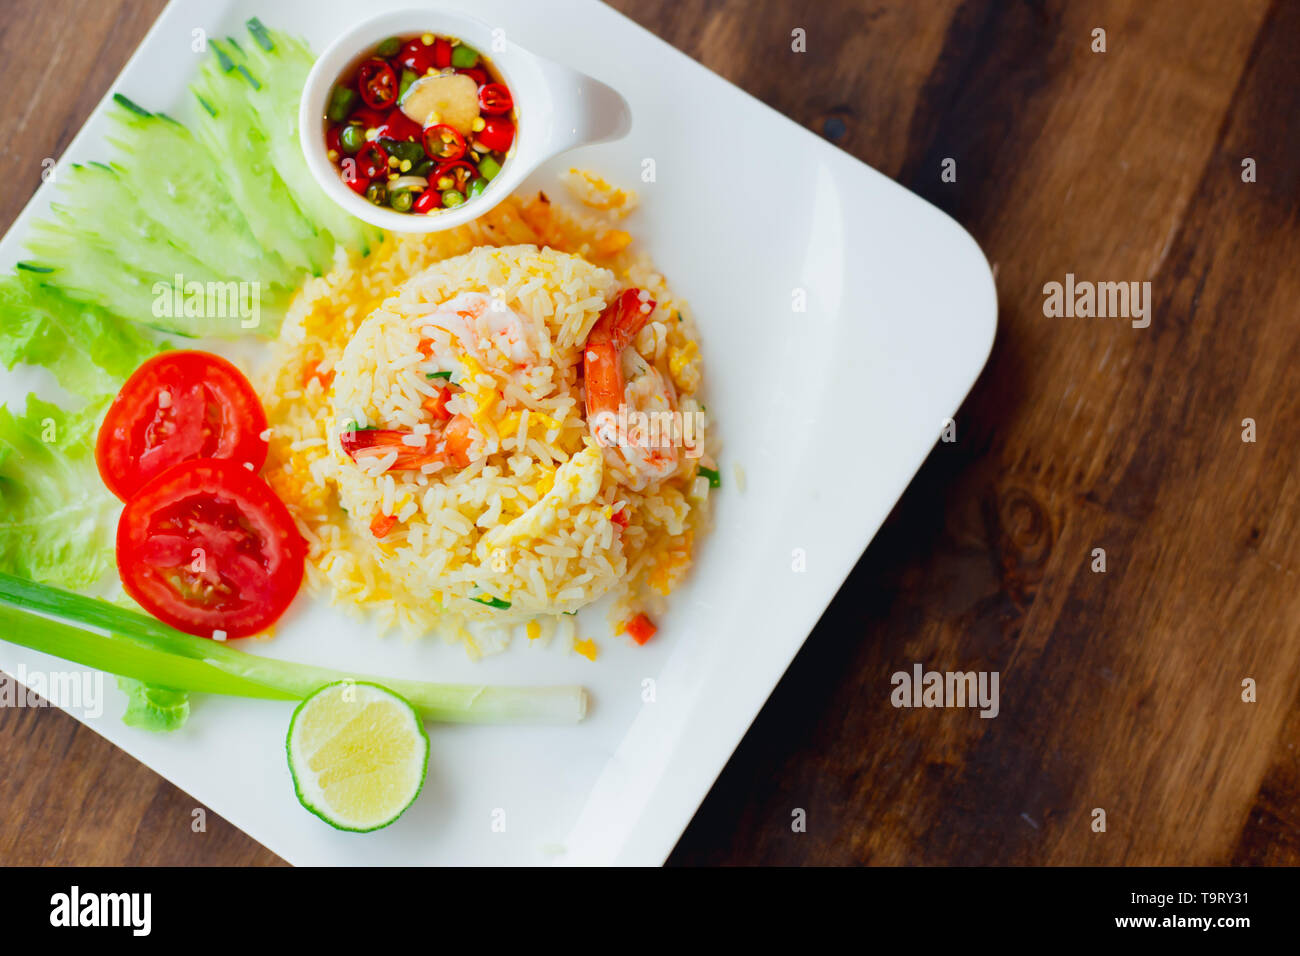 Stile Thailandese Gamberi fritti ricetta riso top view servita su un tavolo di legno con decorazione vegetale sul piatto bianco Foto Stock